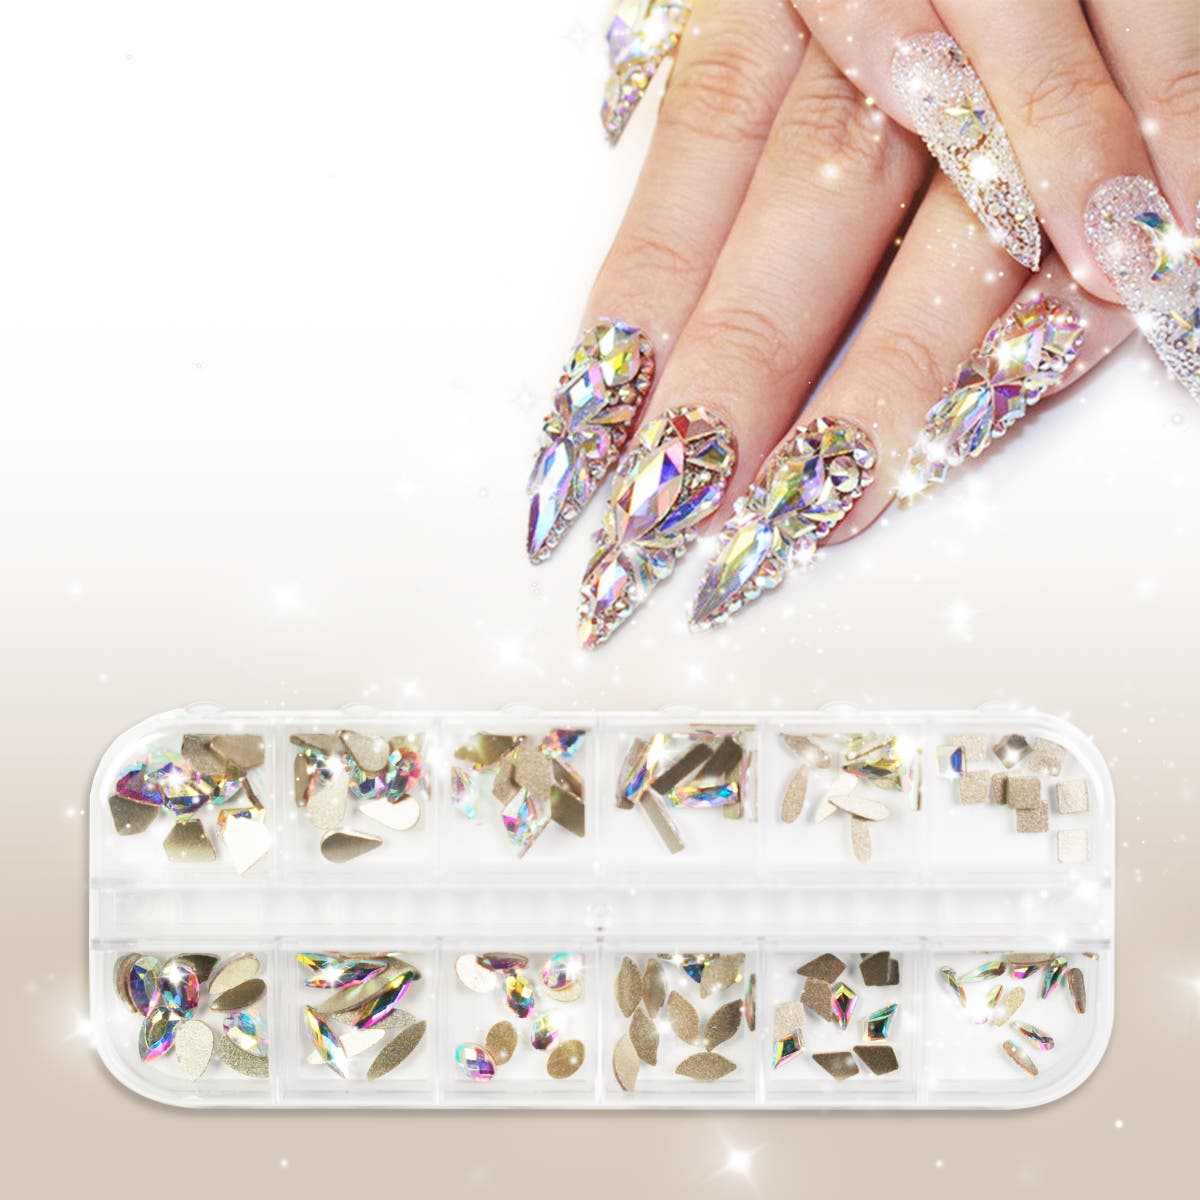  Rinstonestone for Nails, 6 Boxes Nail Art Glitter